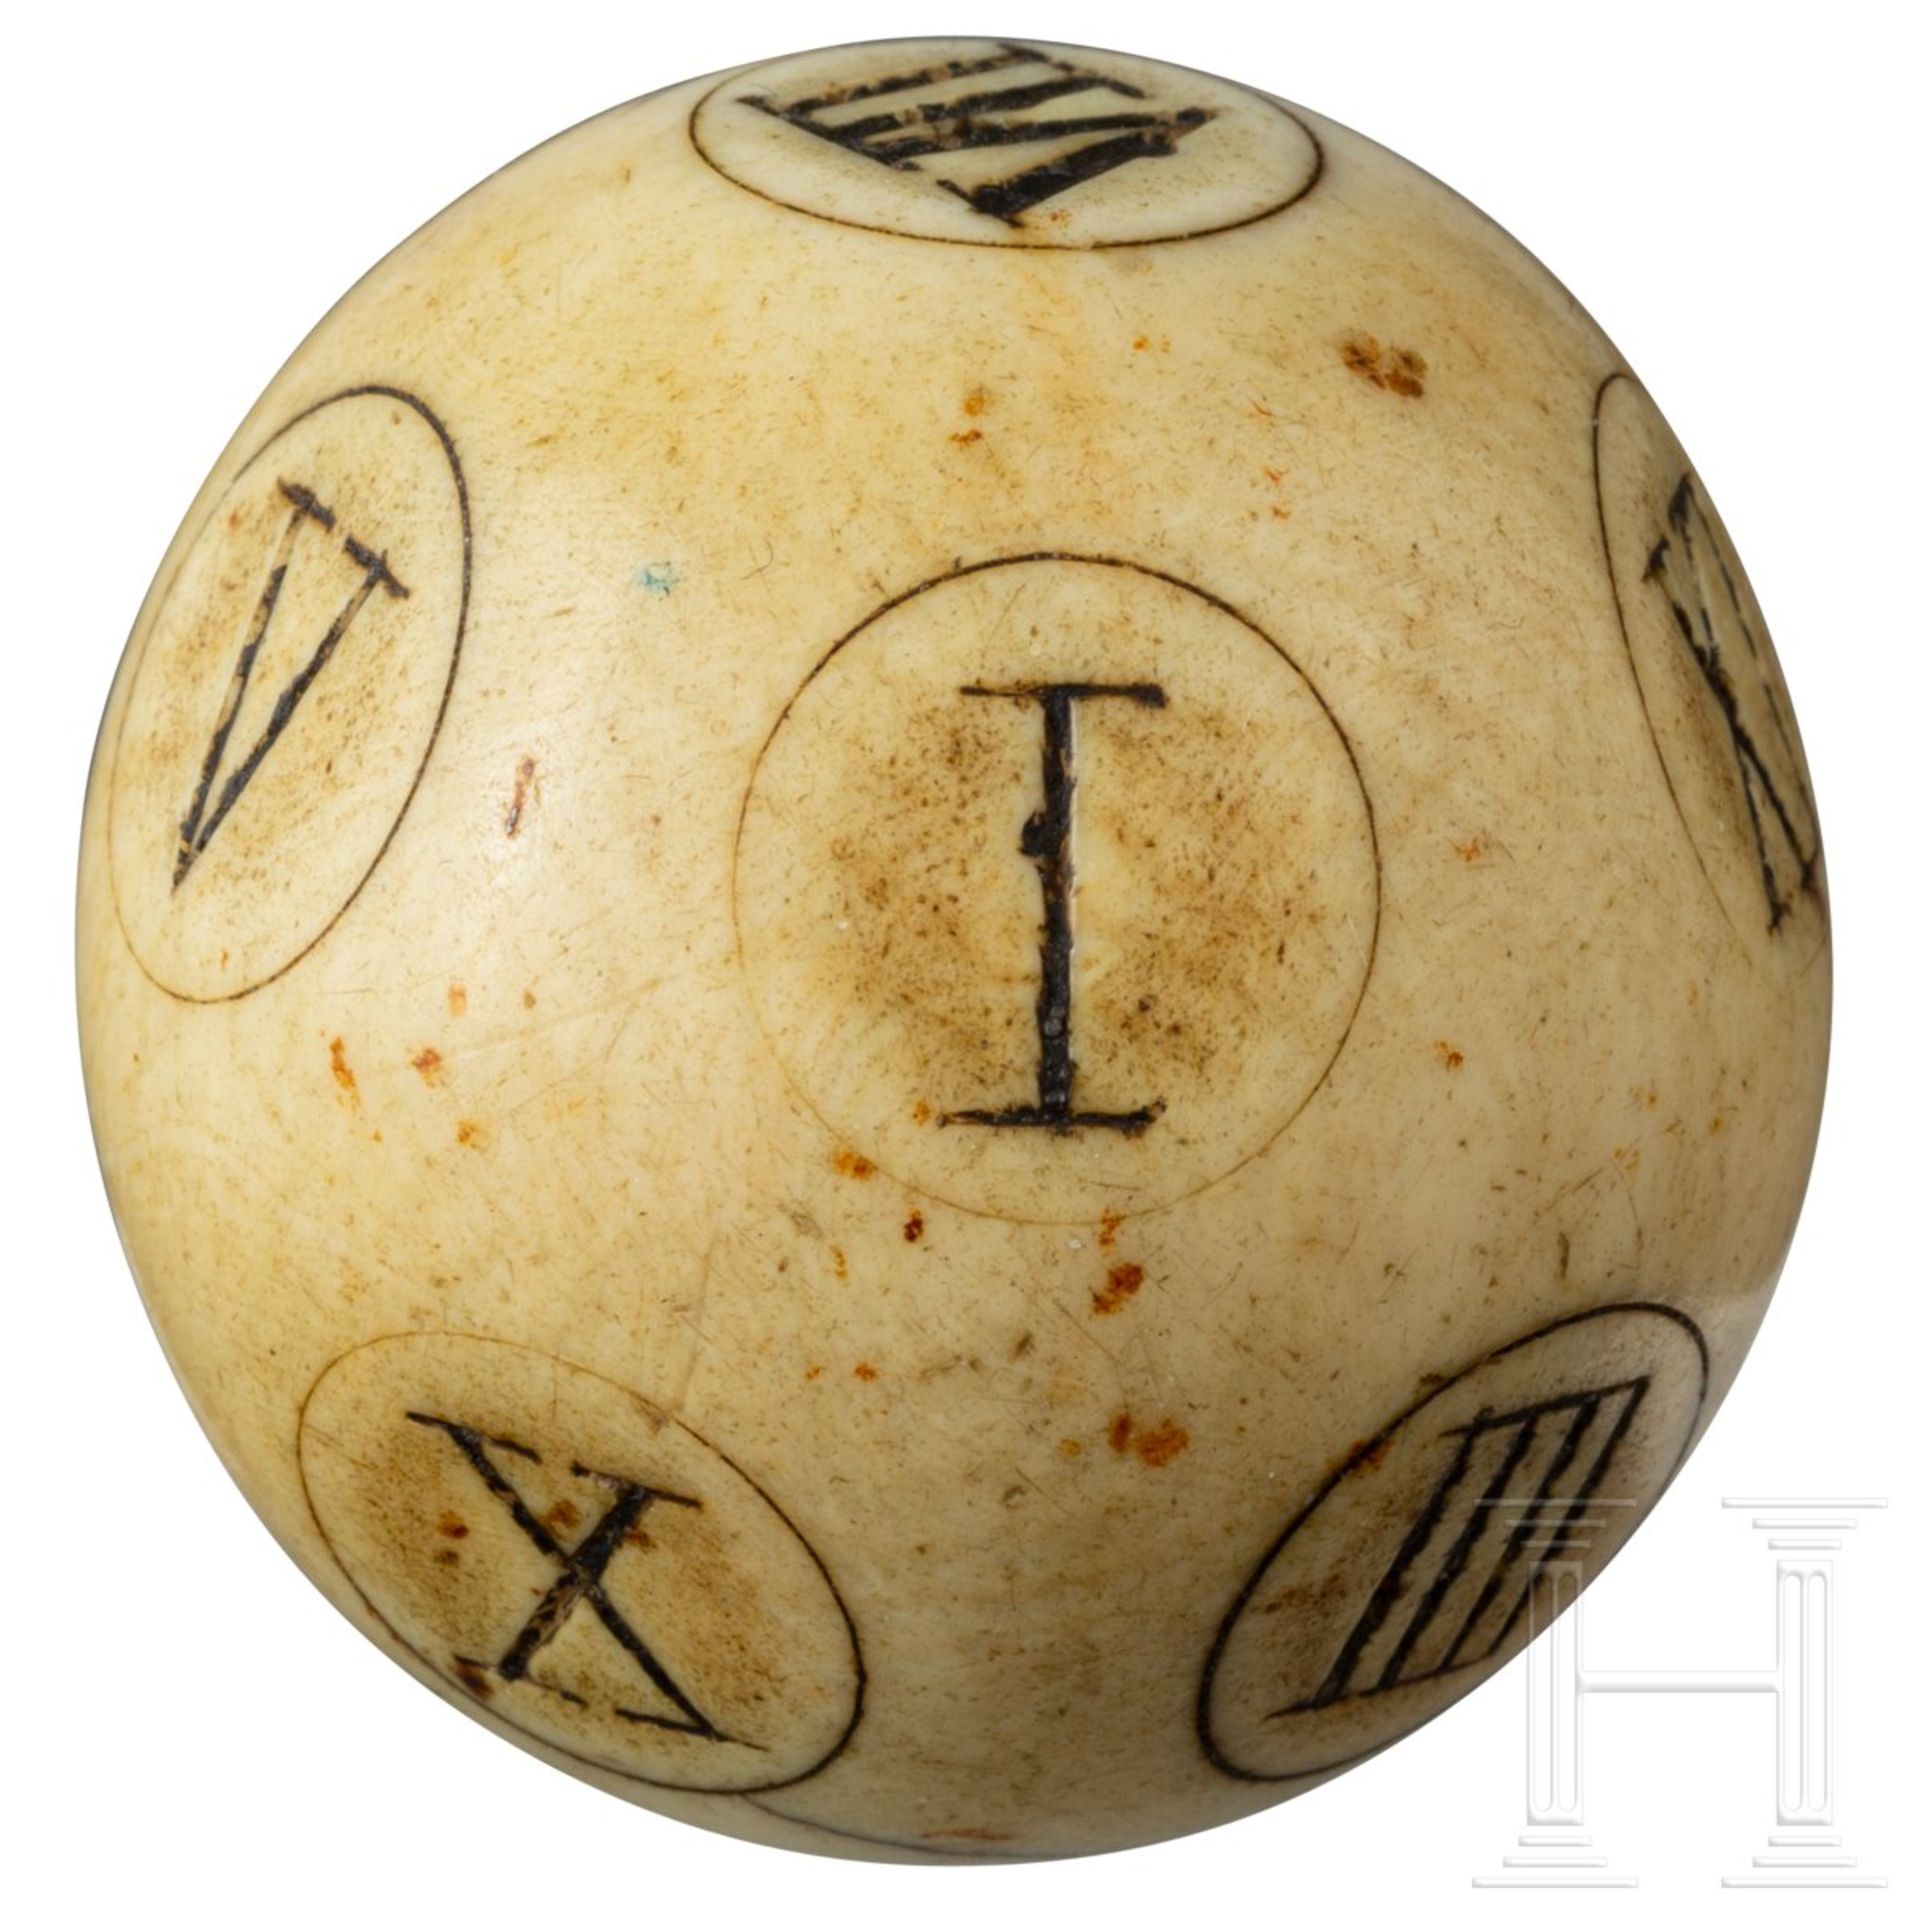 Seltener Barock-Spielball mit römischen Ziffern von I bis XII, England, 18. Jhdt.Massives,